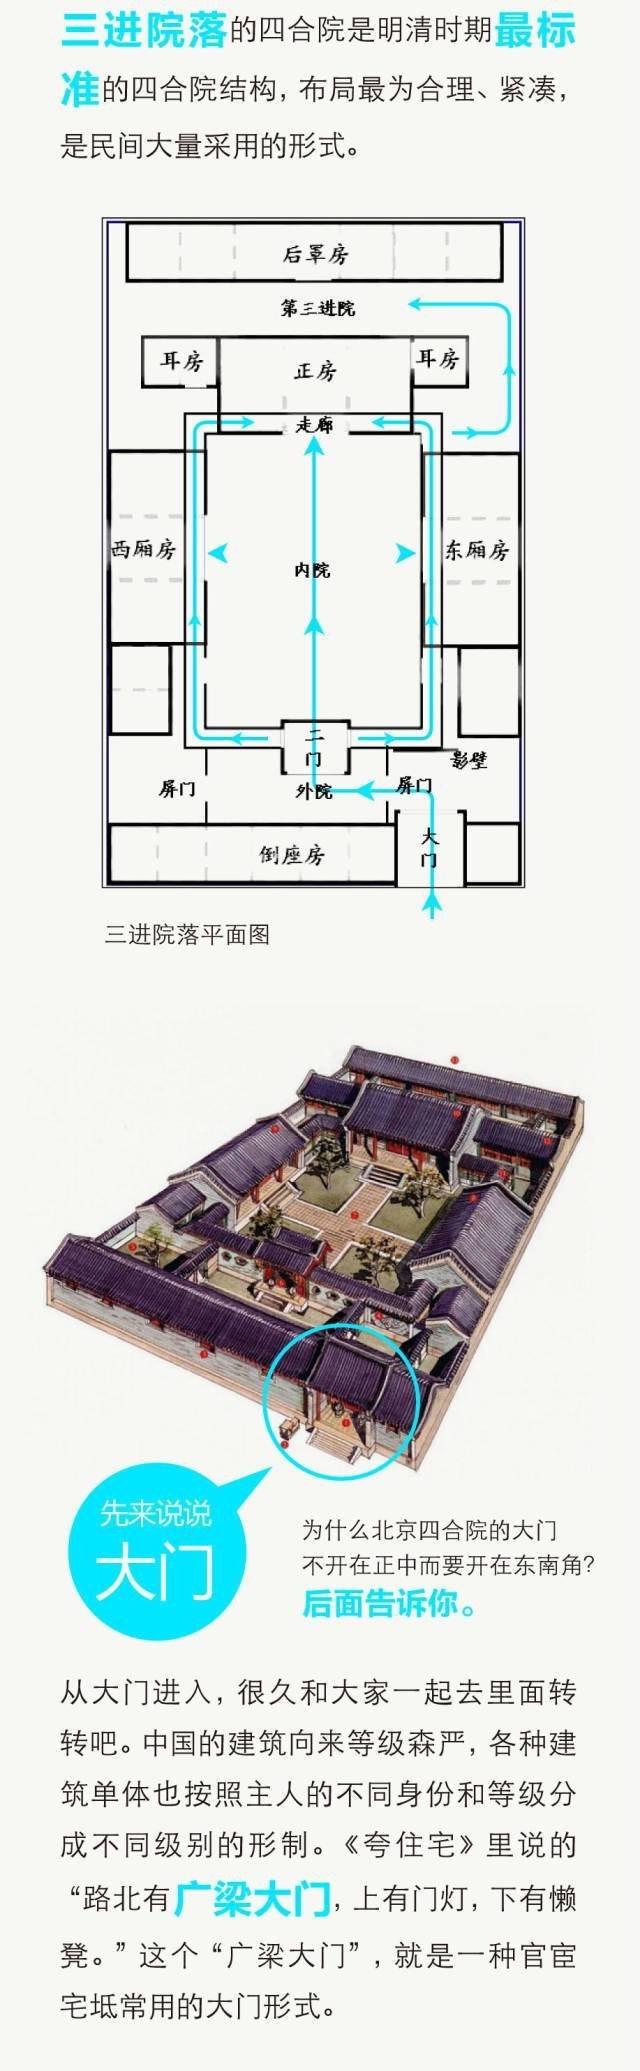 中国古院落布局方式图片